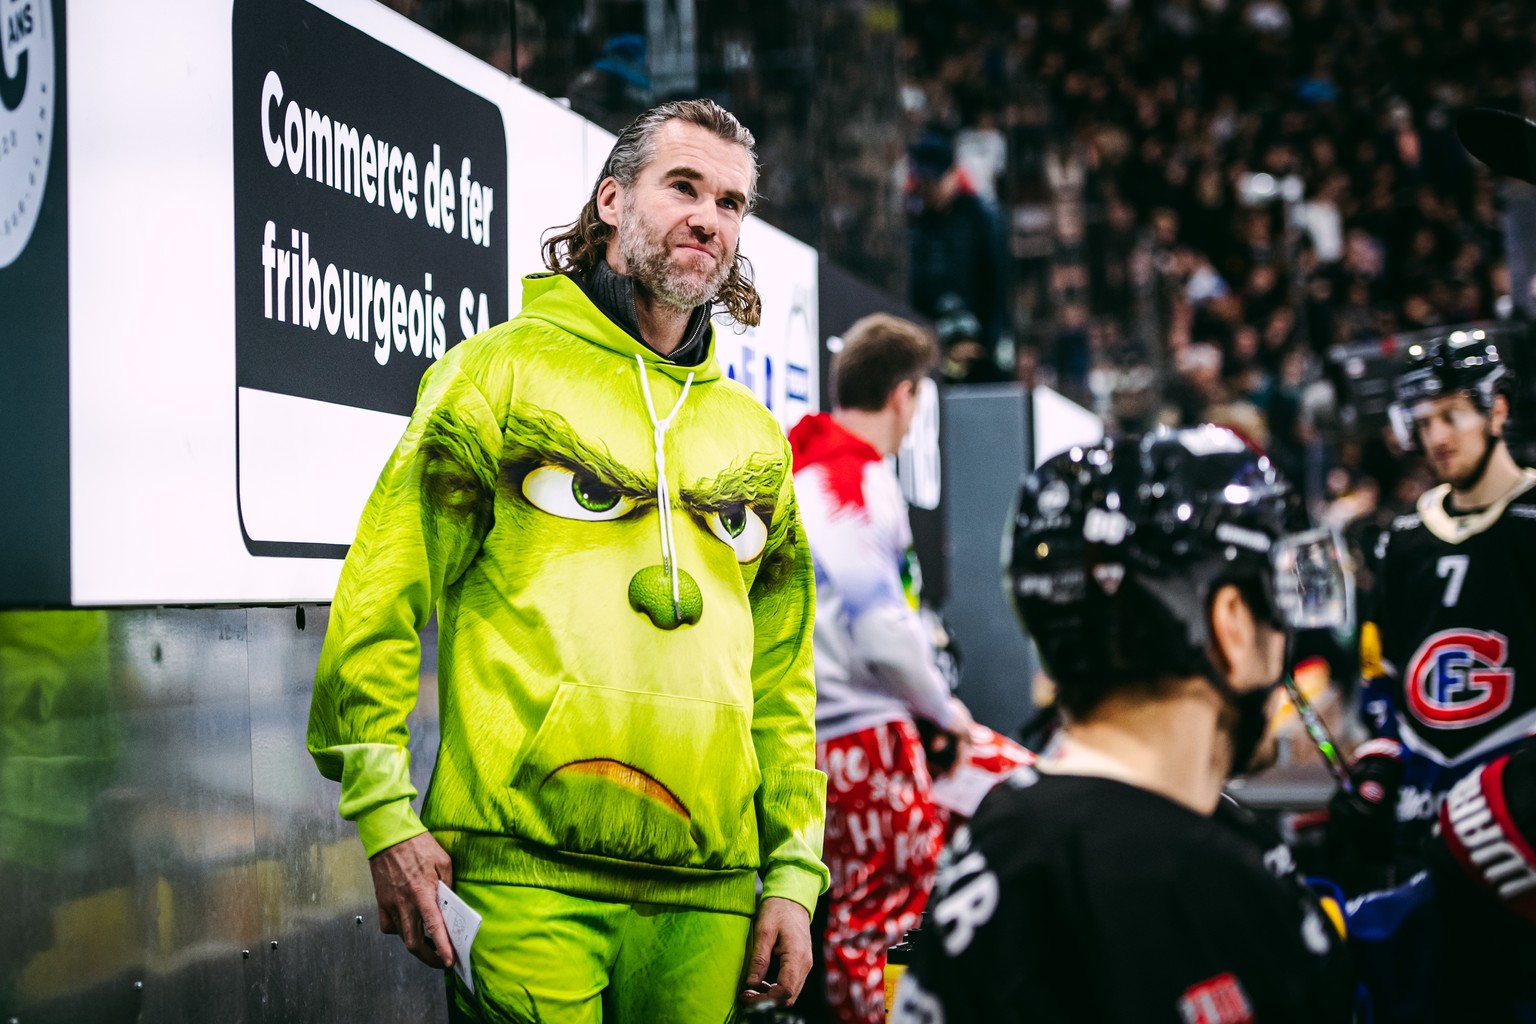 L?entraineur fribourgeois Christian Dube, avec son ensemble de Noel � Le Grinch �, lors du match du championnat suisse de hockey sur glace de National League entre le HC Fribourg-Gotteron, HCFG, et Ge ...